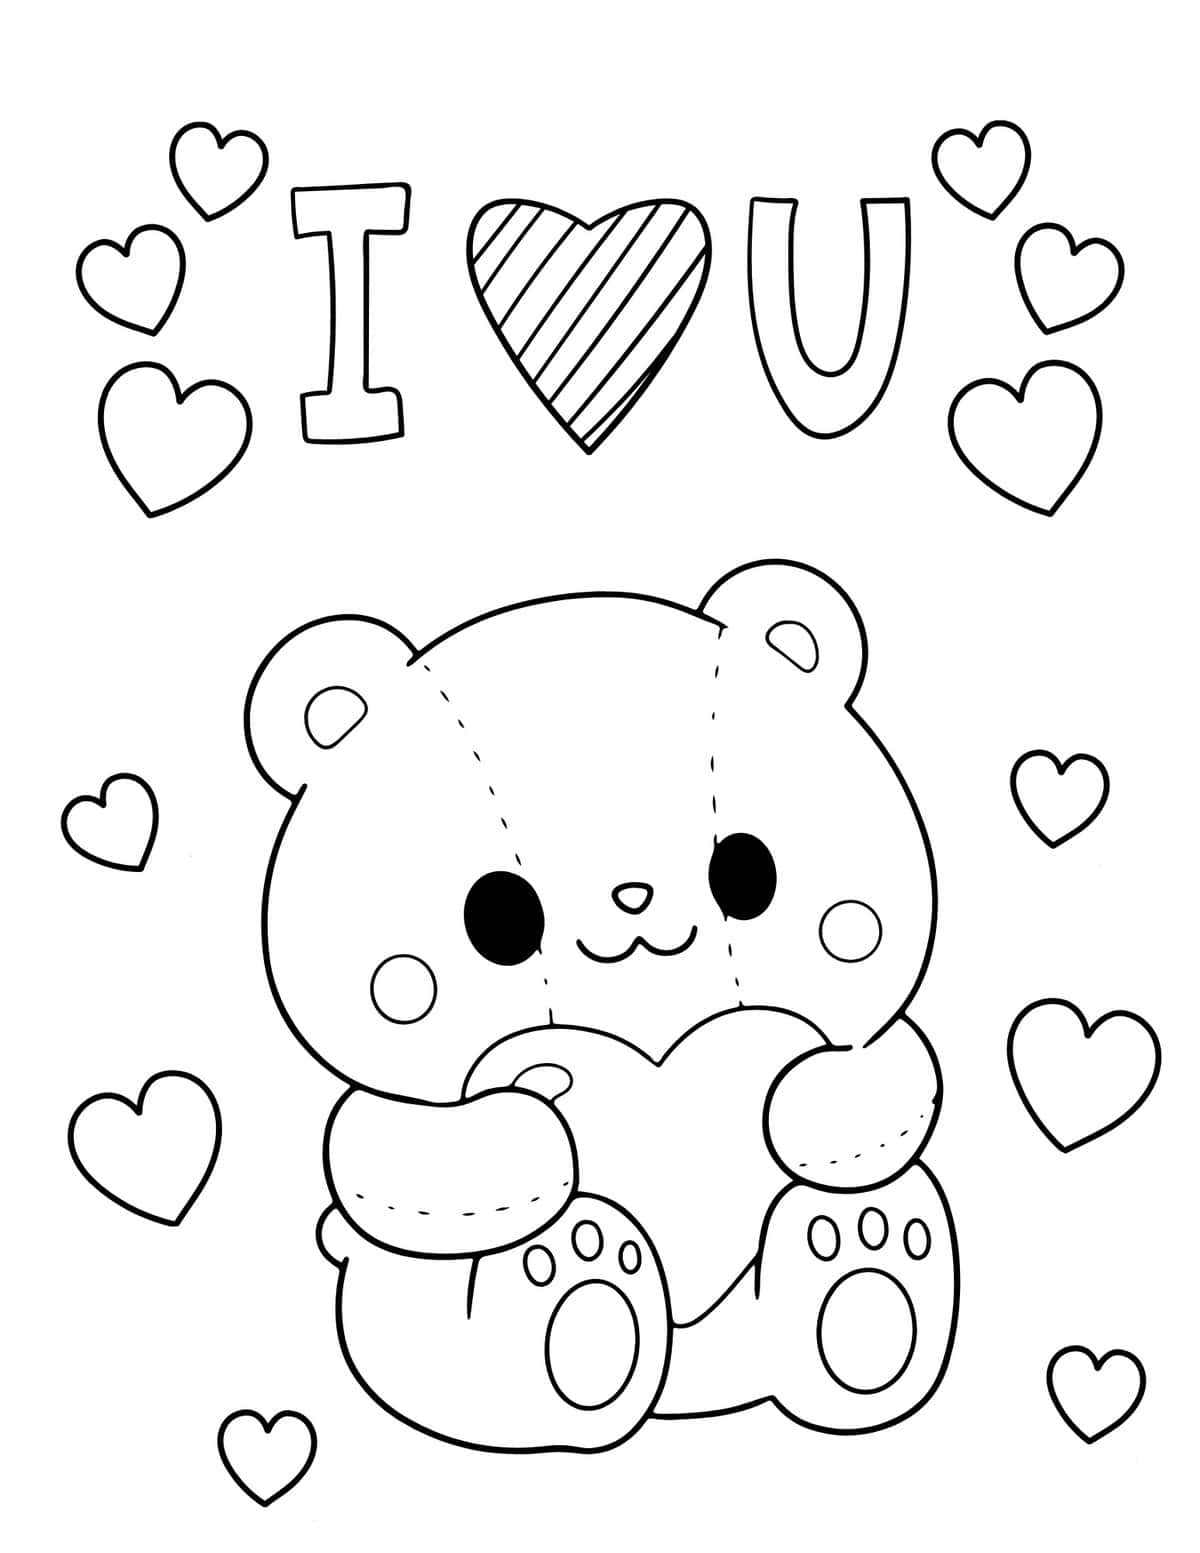 I love you teddy bear with heart